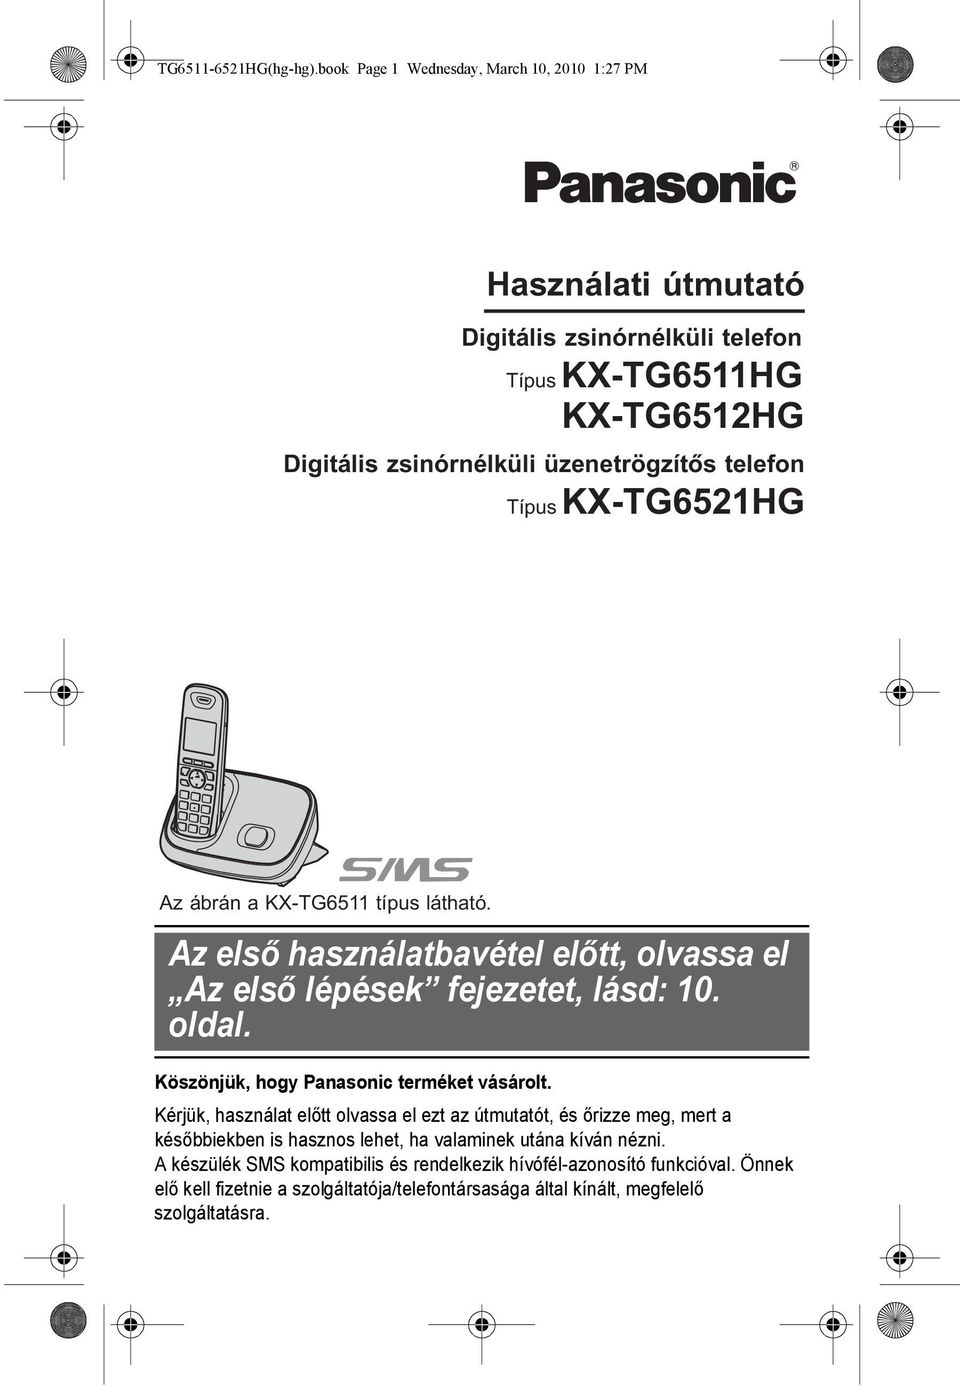 telefon Típus KX-TG6521HG Az ábrán a KX-TG6511 típus látható. Az első használatbavétel előtt, olvassa el Az első lépések fejezetet, lásd: 10. oldal.